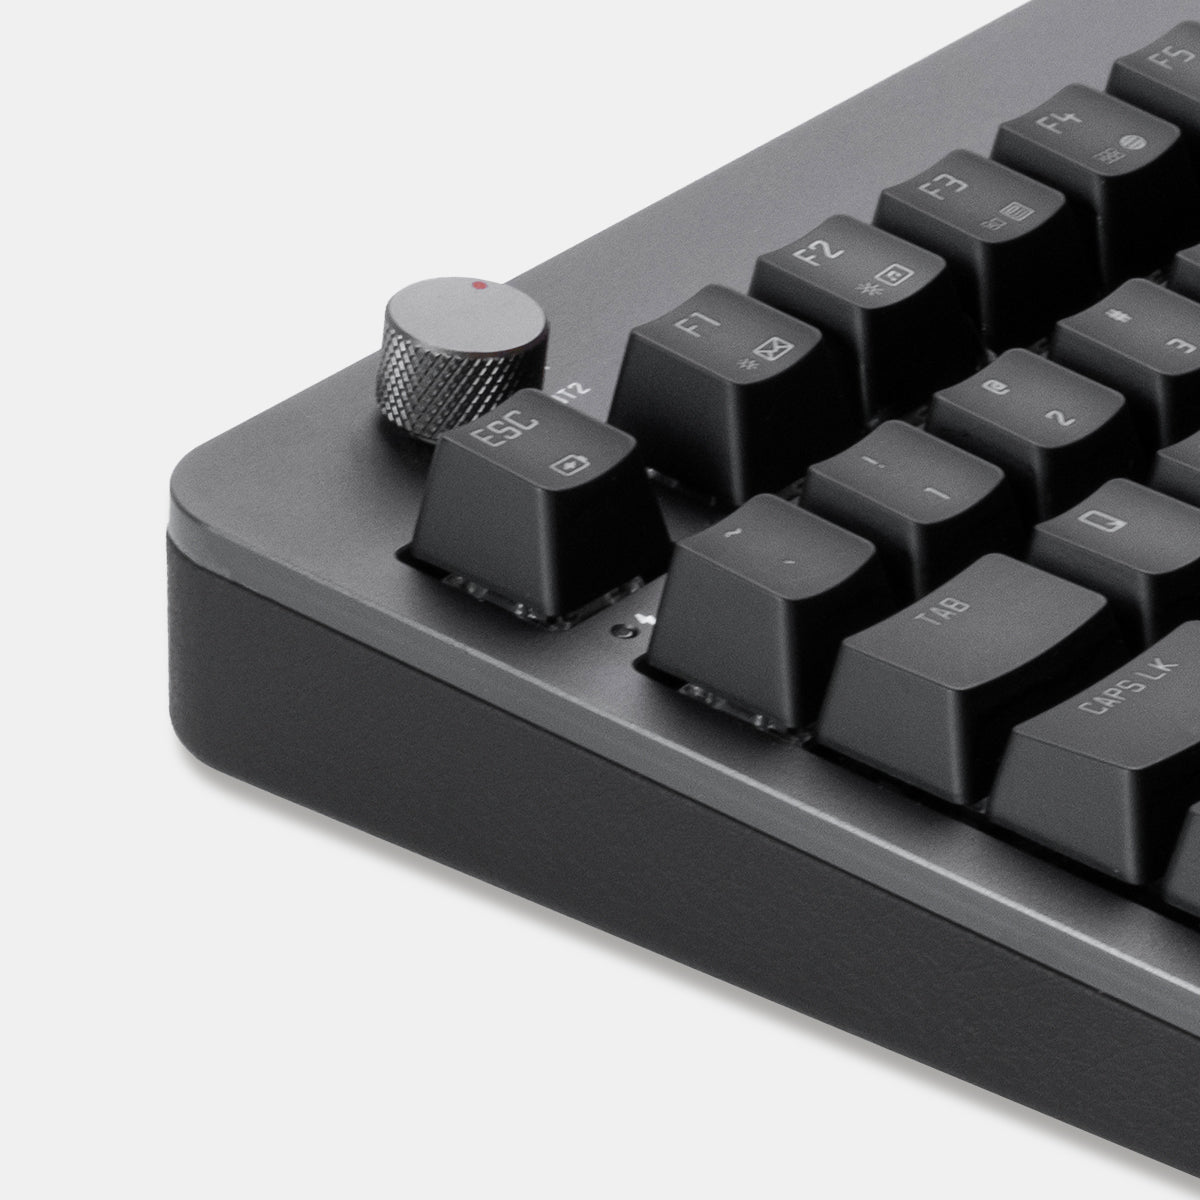 Foqo draadloos toetsenbord